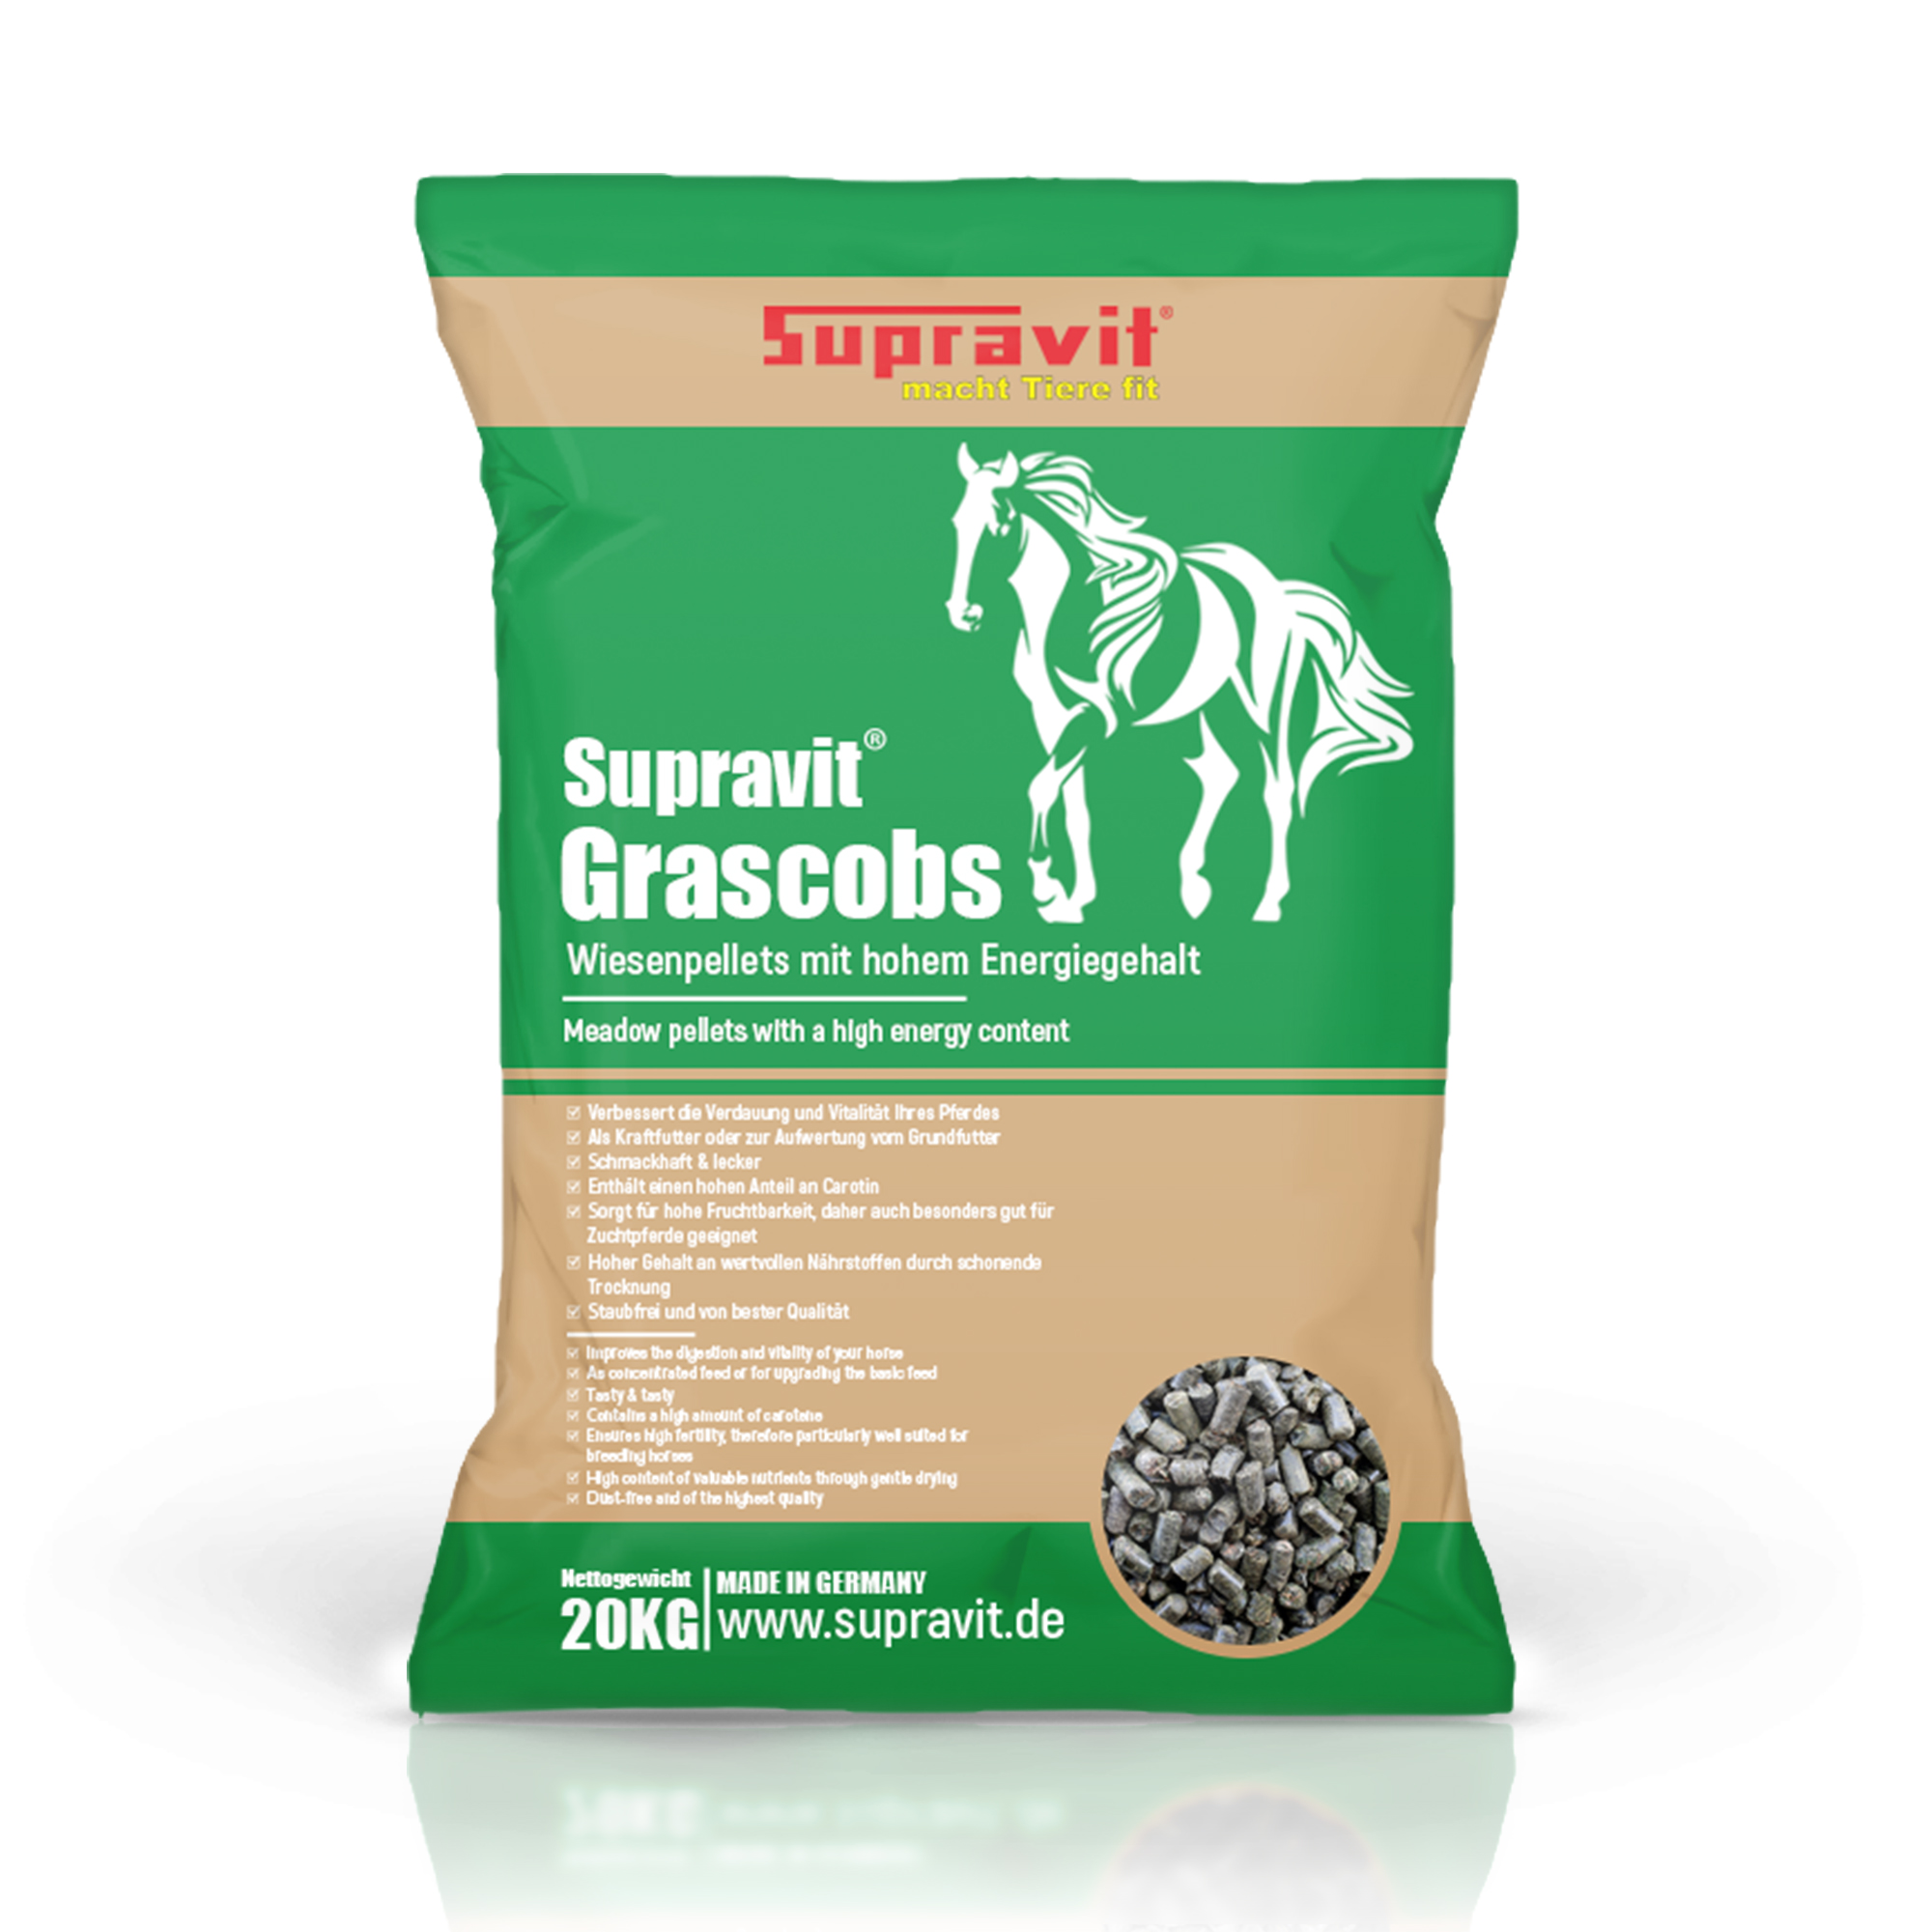 Supravit Grascobs Pferd 20kg | natürliche Graspellets als Heuersatz | Wiesencobs für Pferde mit hohem Energiegehalt | Pferdefutter Heucobs aus frischem Gras